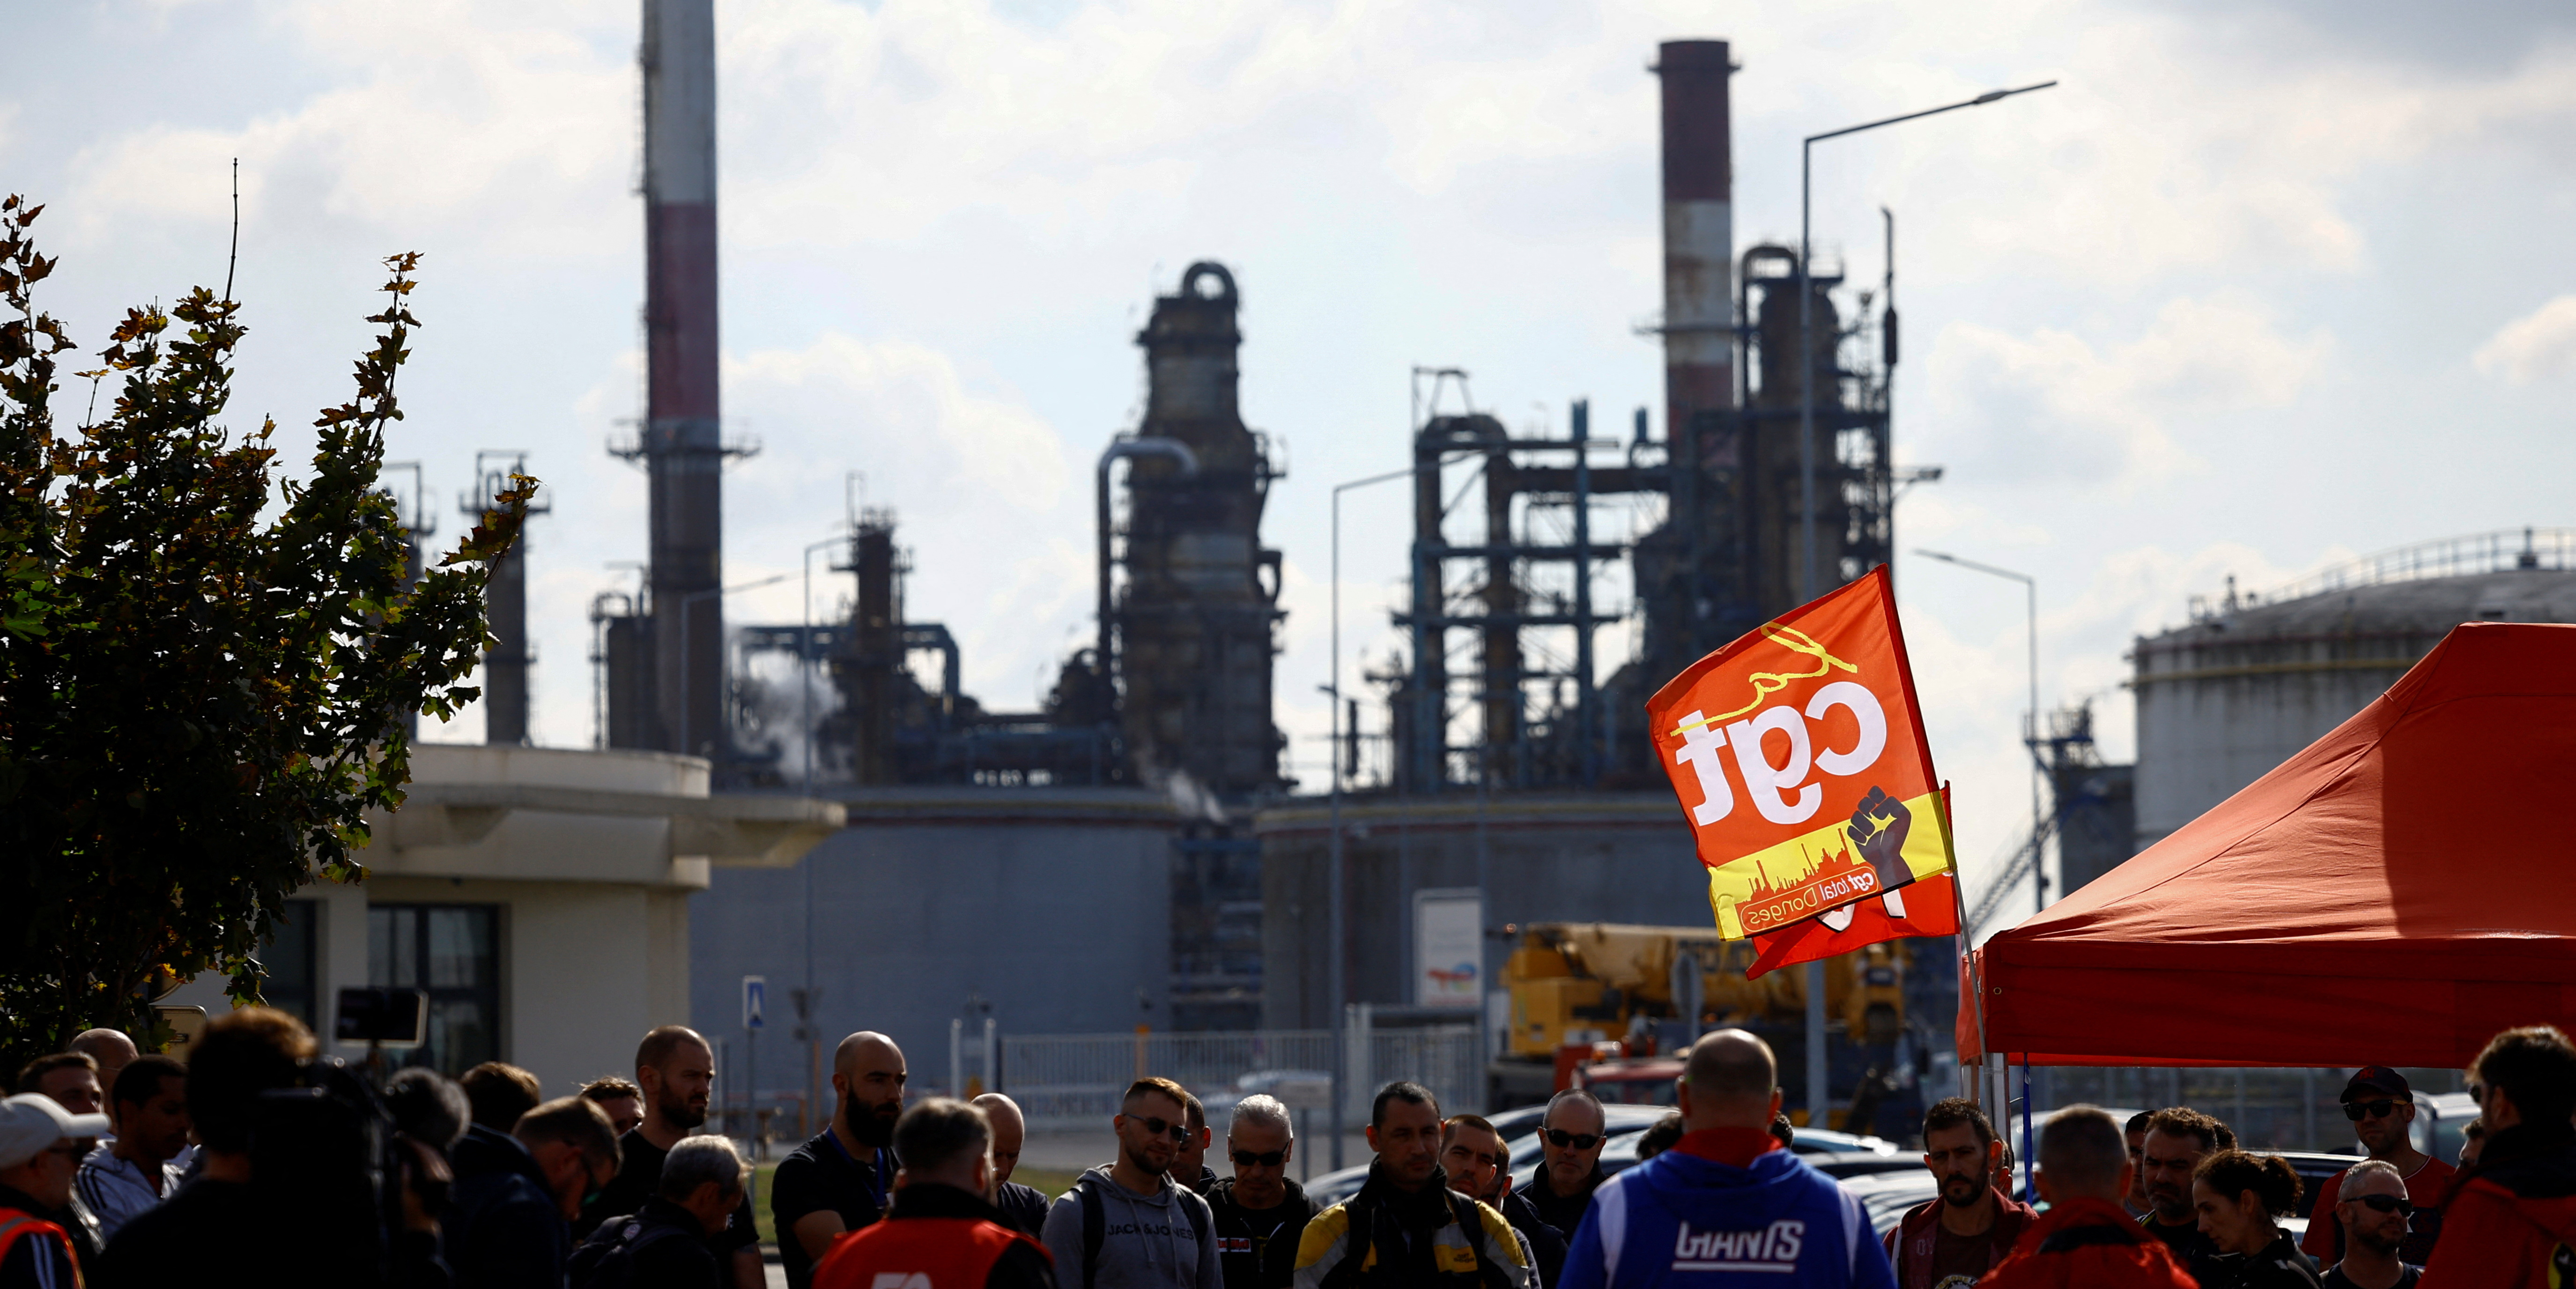 Raffineries : la CGT appelle à la grève reconductible dès le 6 mars